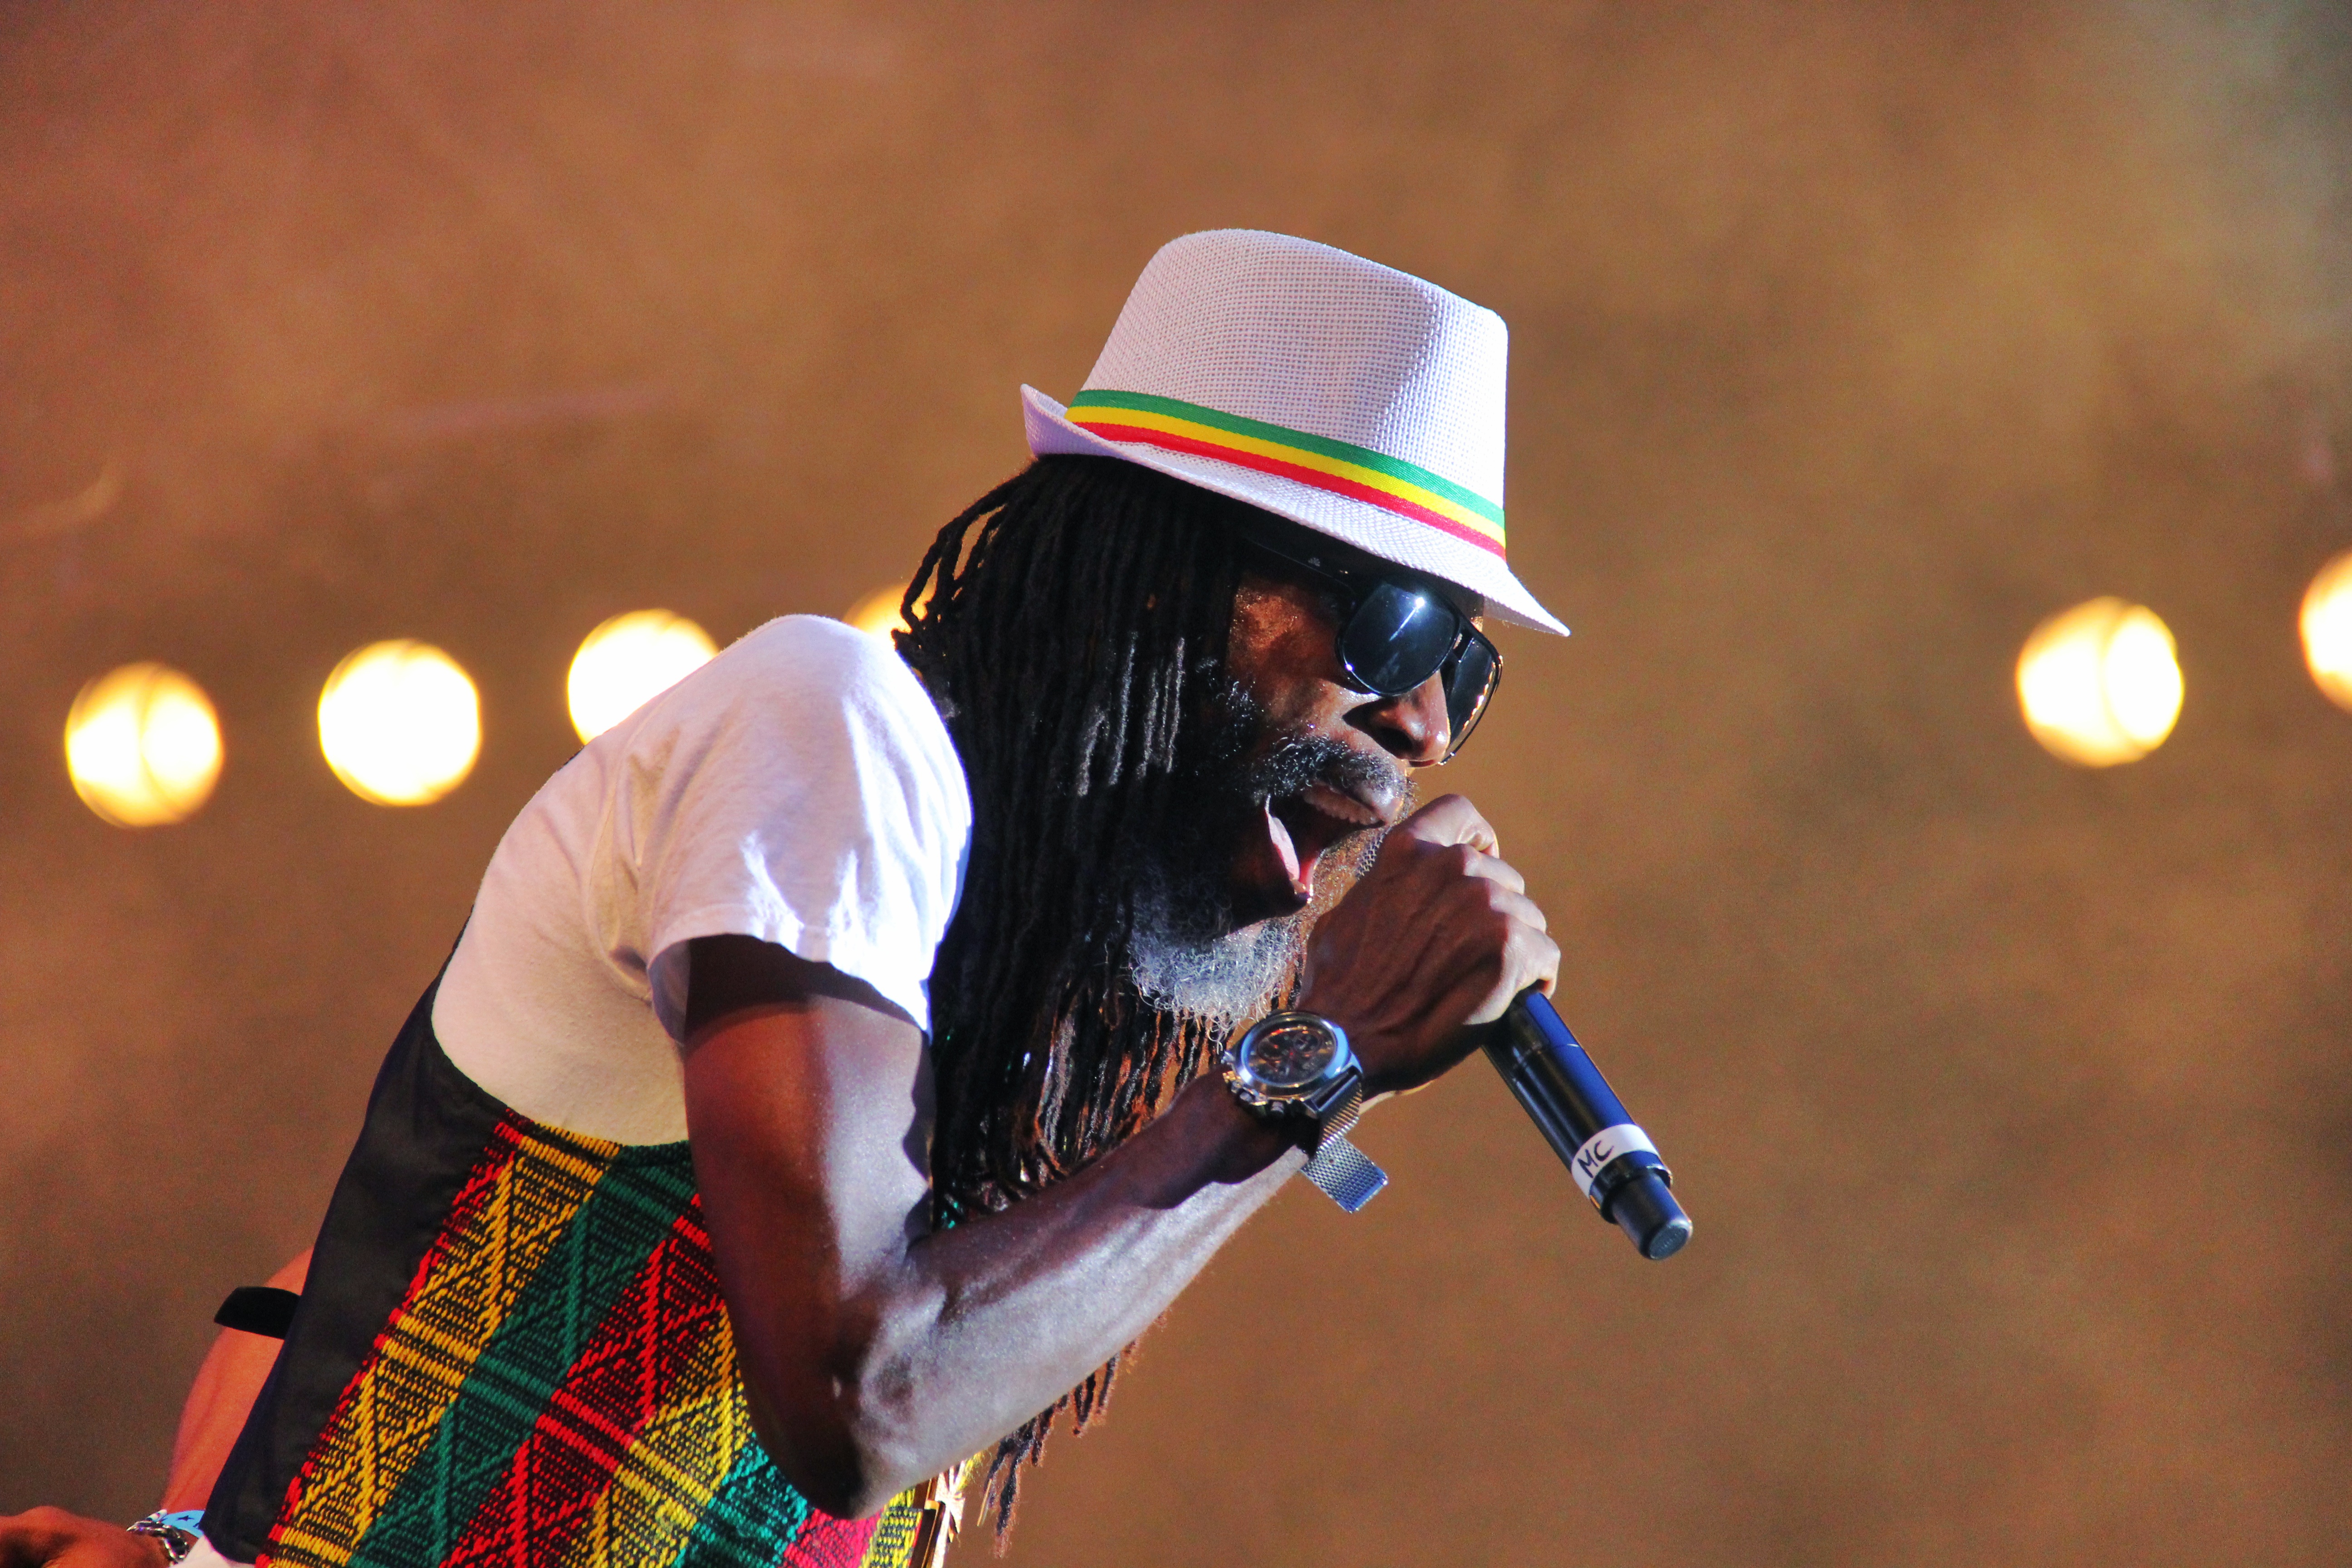 Datei:02- dubtonic kru, live garance reggae festival 2014 - fred reggaelover perry.jpg